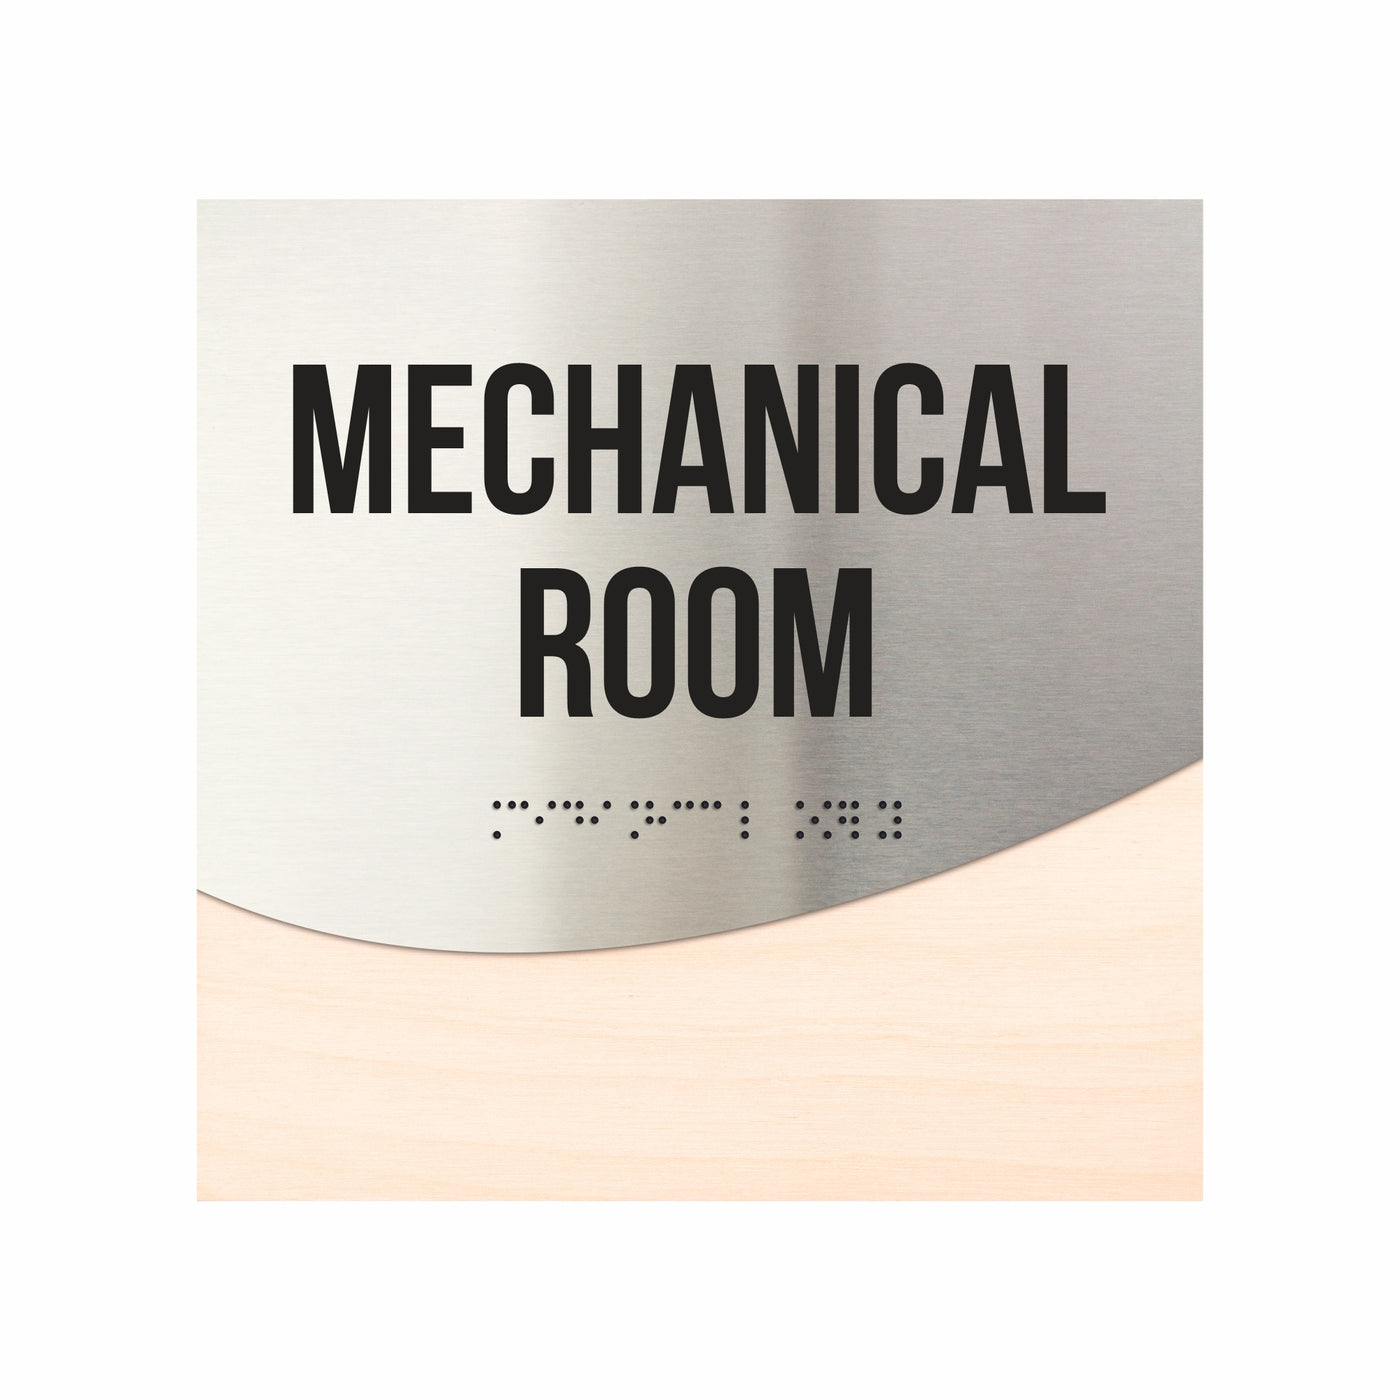 Mechanical Room Door Sign - Stainless Steel & Wood Door Plate "Jure" Design